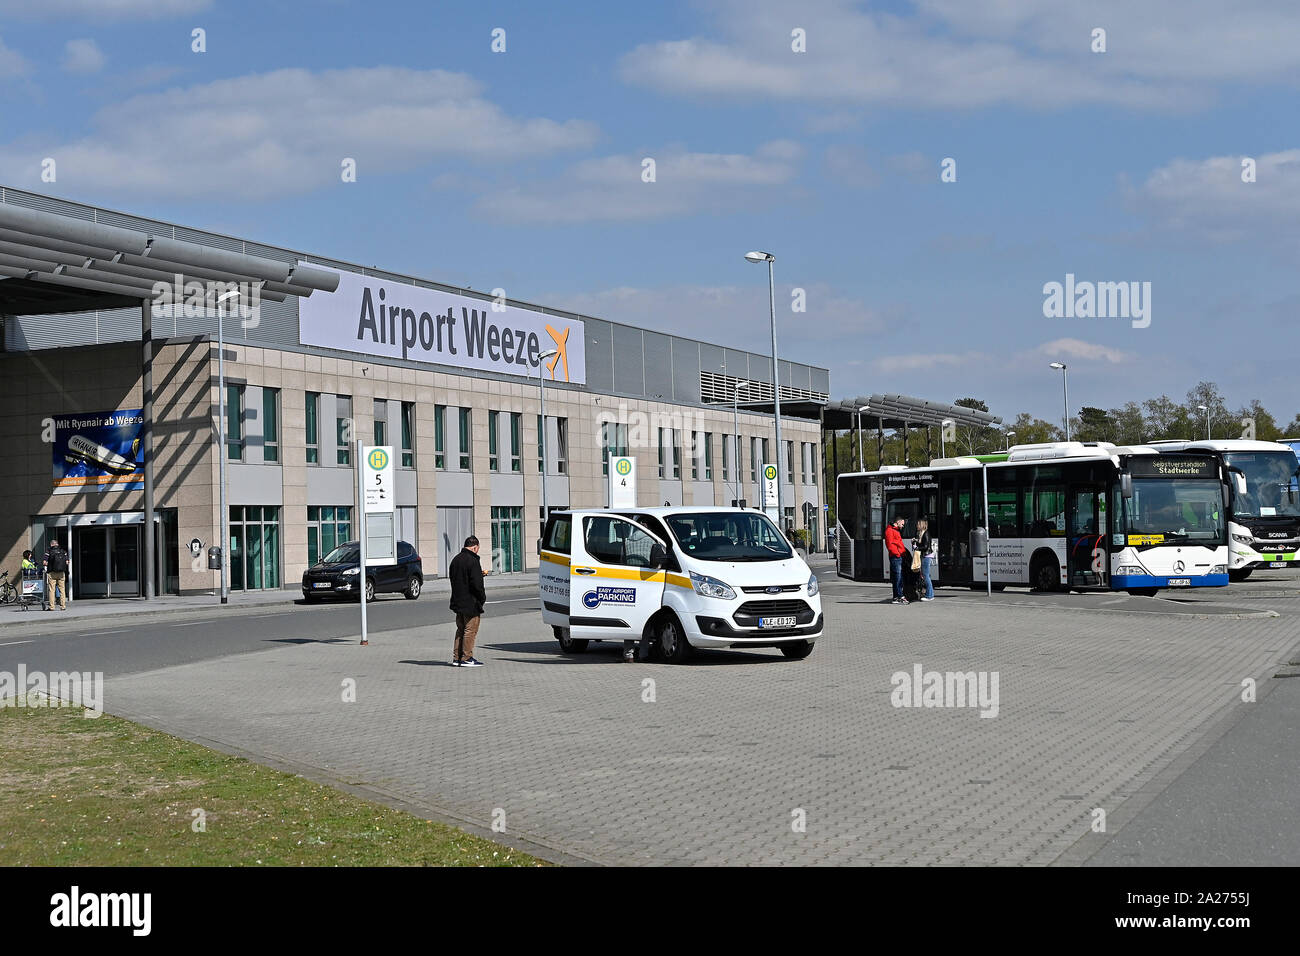 11.04.2019, Weeze, Renania settentrionale-Vestfalia, Germania - Aeroporto di Weeze, il quale è utilizzato il 90 percento circa dalla compagnia aerea irlandese Ryanair che lo chiama Duesse Foto Stock